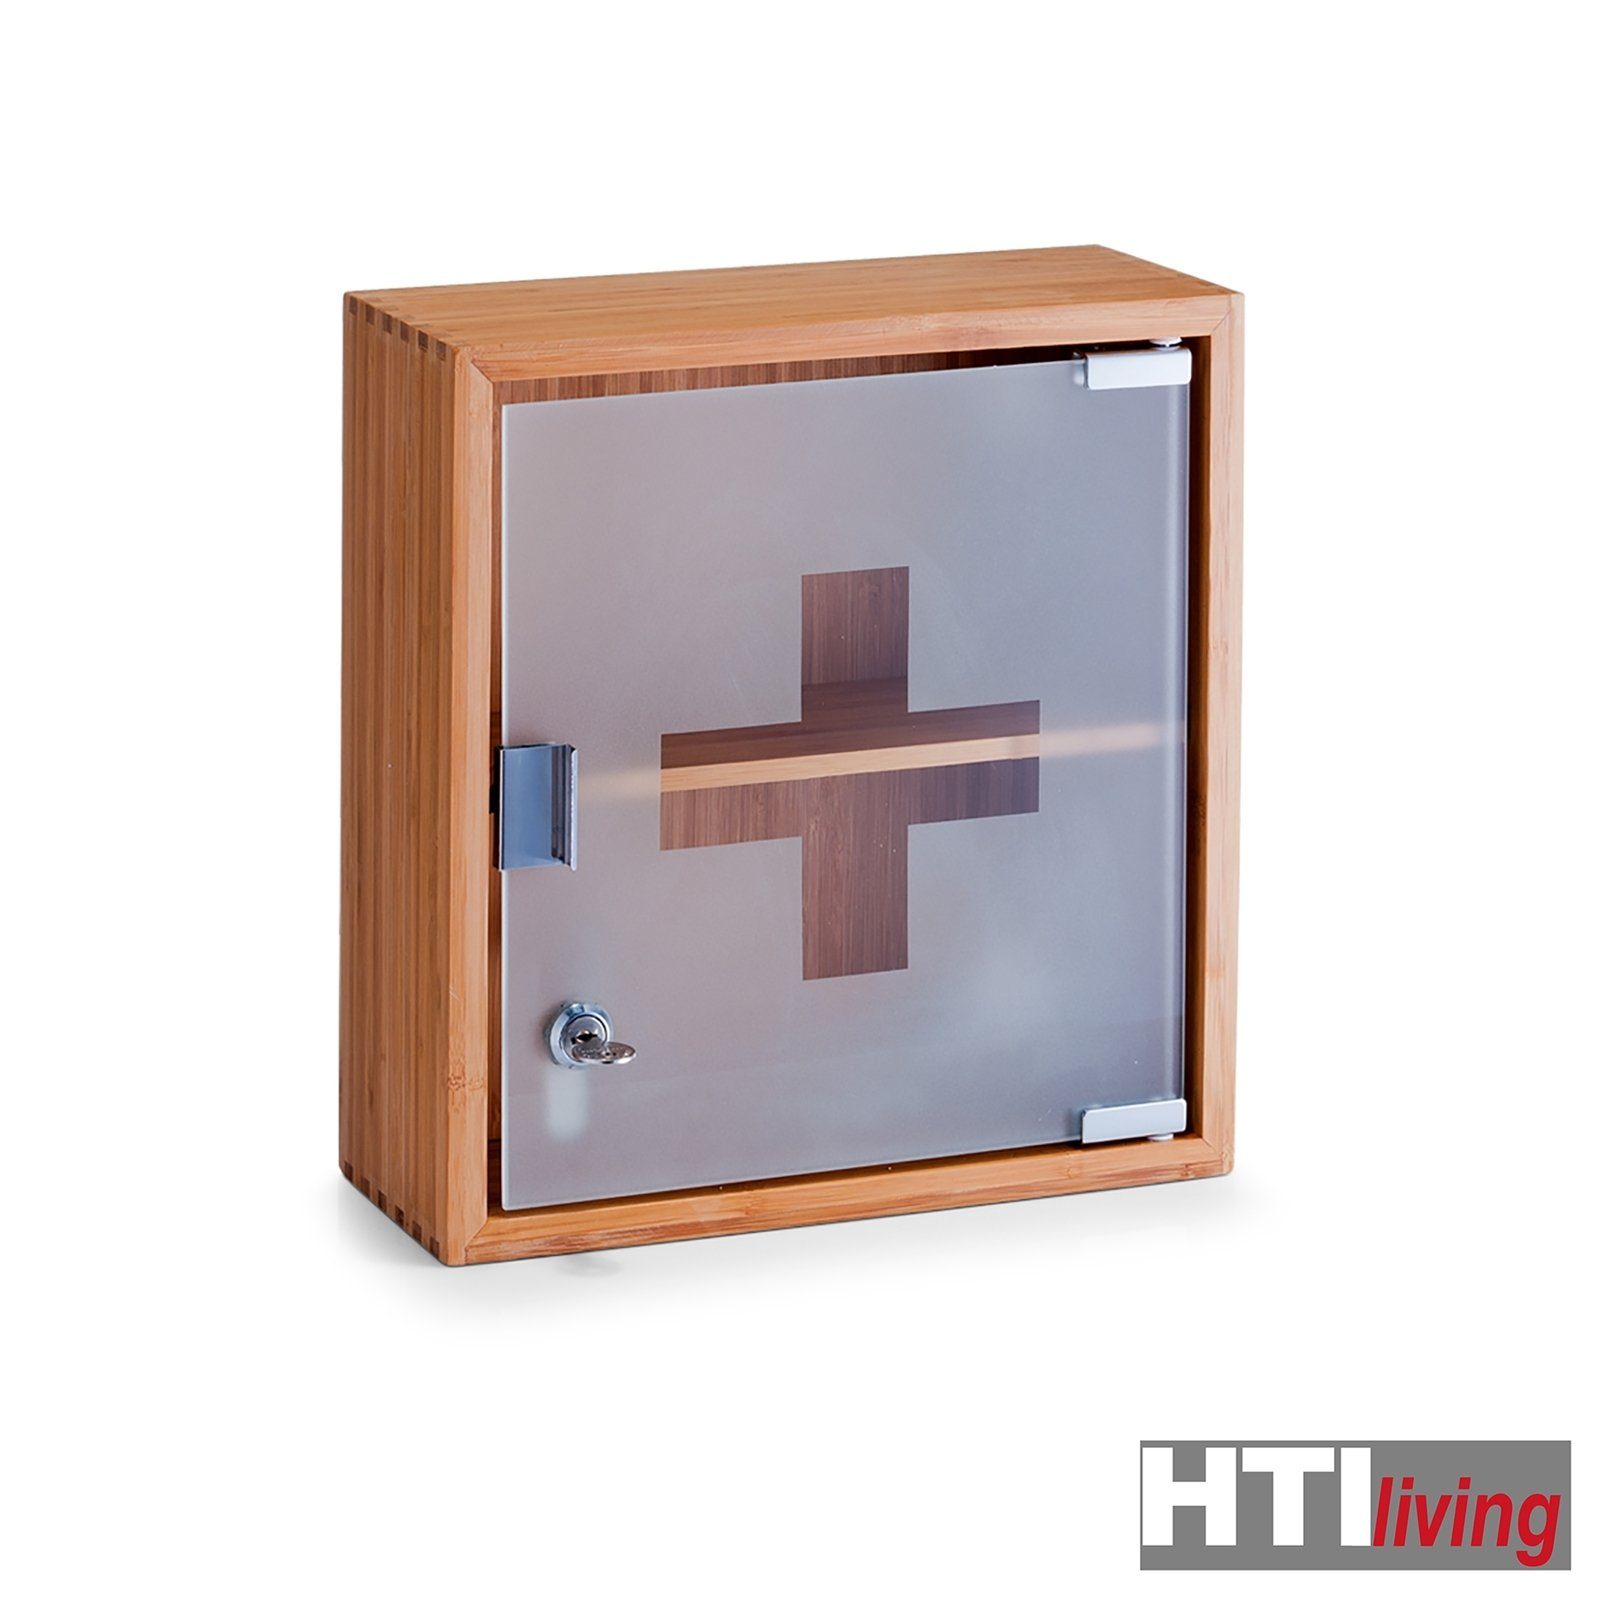 HTI-Living Bambus/Glas Erste Hilfe Schrank Medizinbox Medizinschrank Medizinschrank